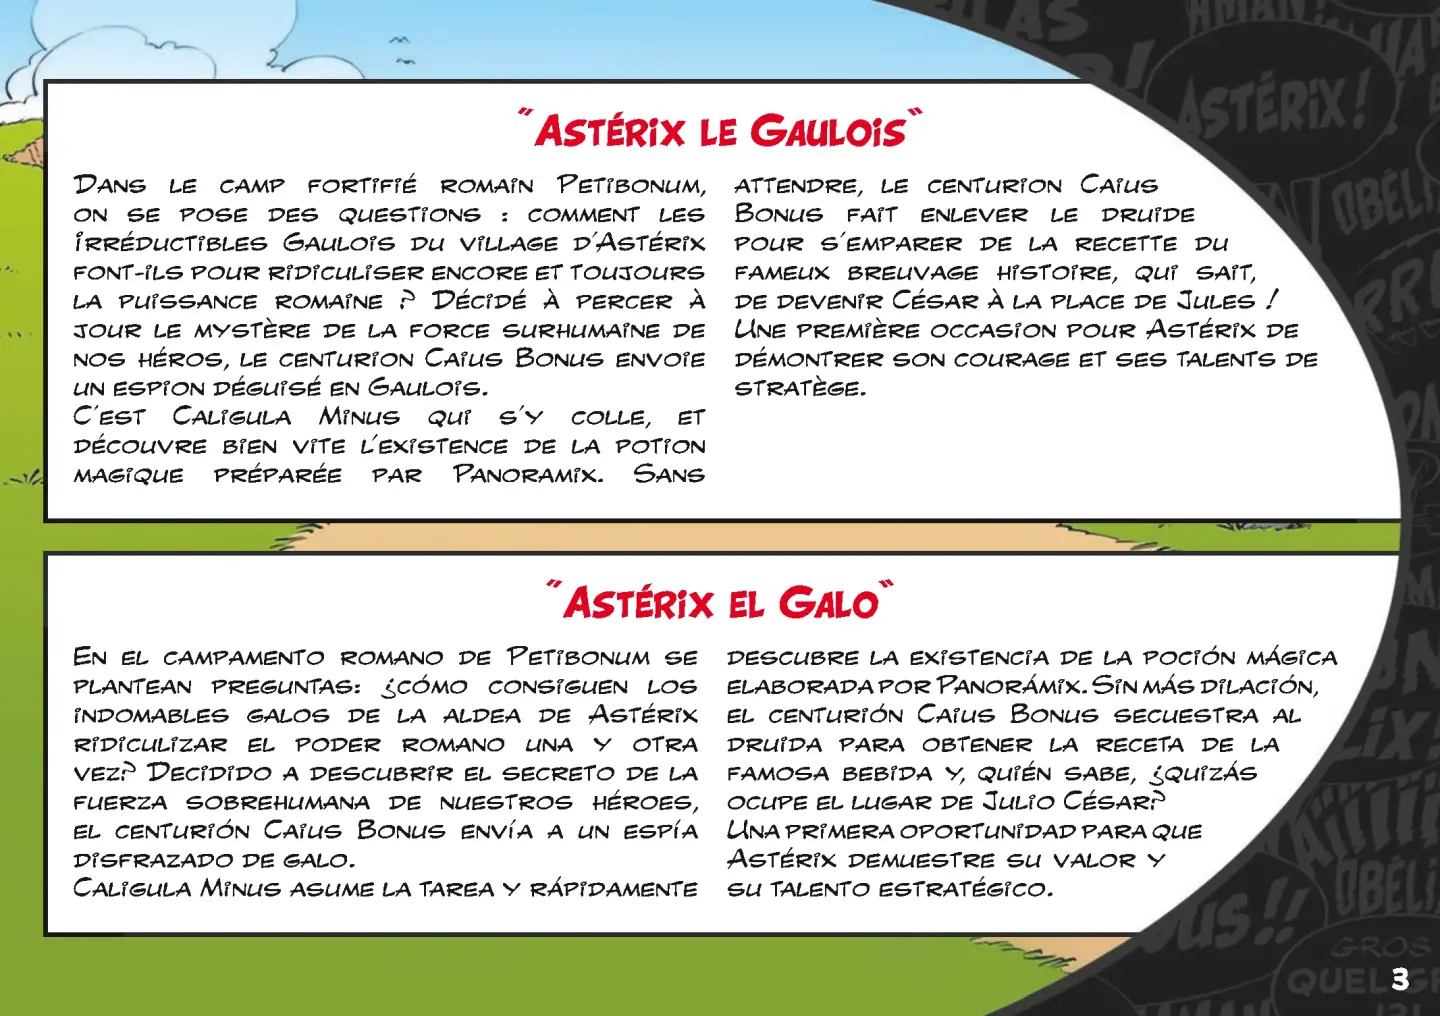 Playmobil Astérix tienda con generales 71015 - Abacus Online